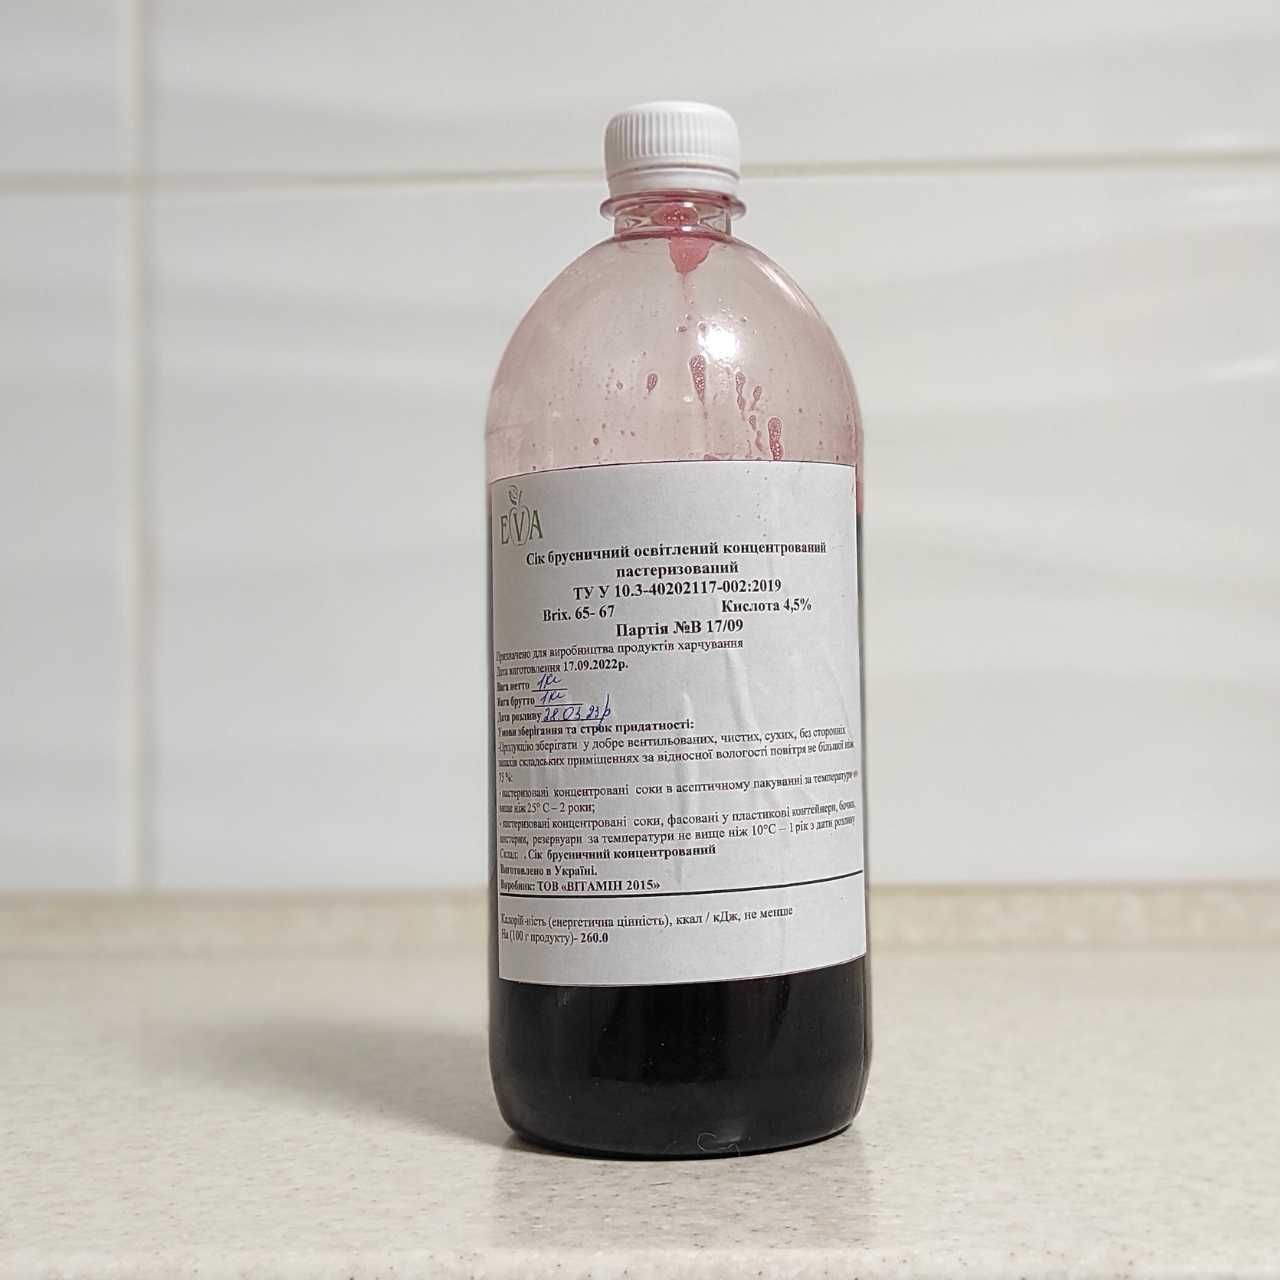 Концентрированный брусничный сок (65-67 ВХ) бутылка 1кг / 0,76 л